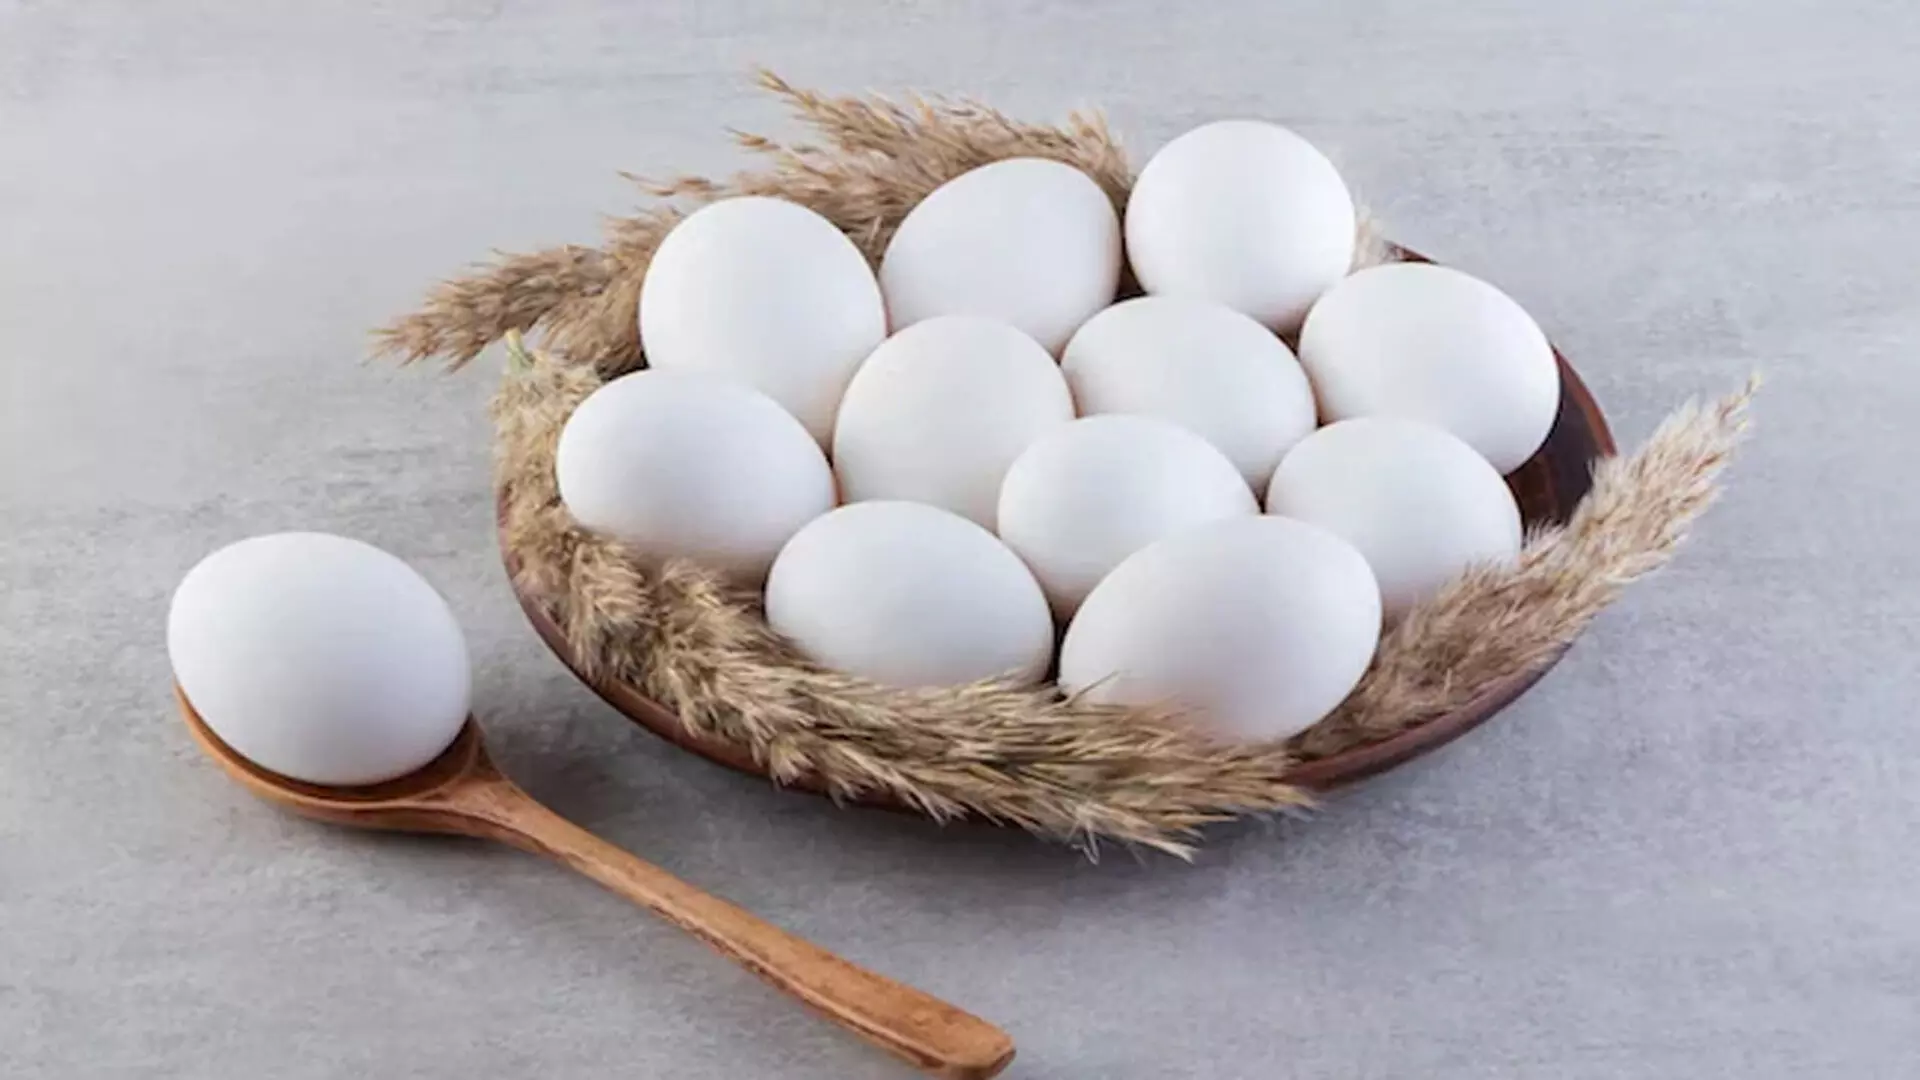 अंडे आपके कोलेस्ट्रॉल स्तर को नुकसान नहीं पहुँचा सकते - अध्ययन